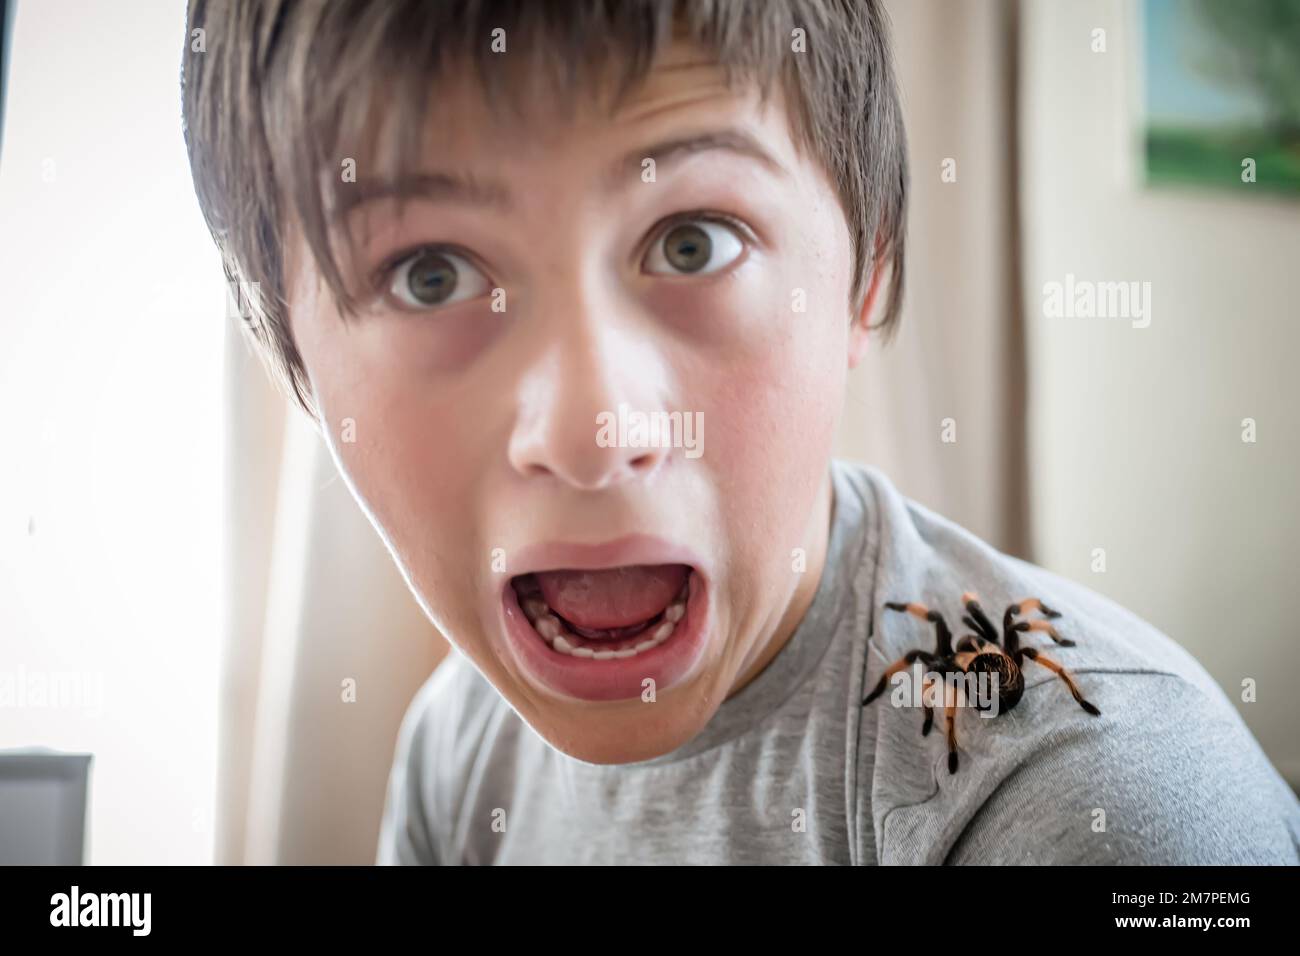 Der Junge schreit vor Entsetzen, wenn er eine riesige Spinne auf der Schulter krabbeln sieht. Mutiger Junge spielt mit der riesigen Spinne Brachypelma albopilosum. Behandlung von Stockfoto